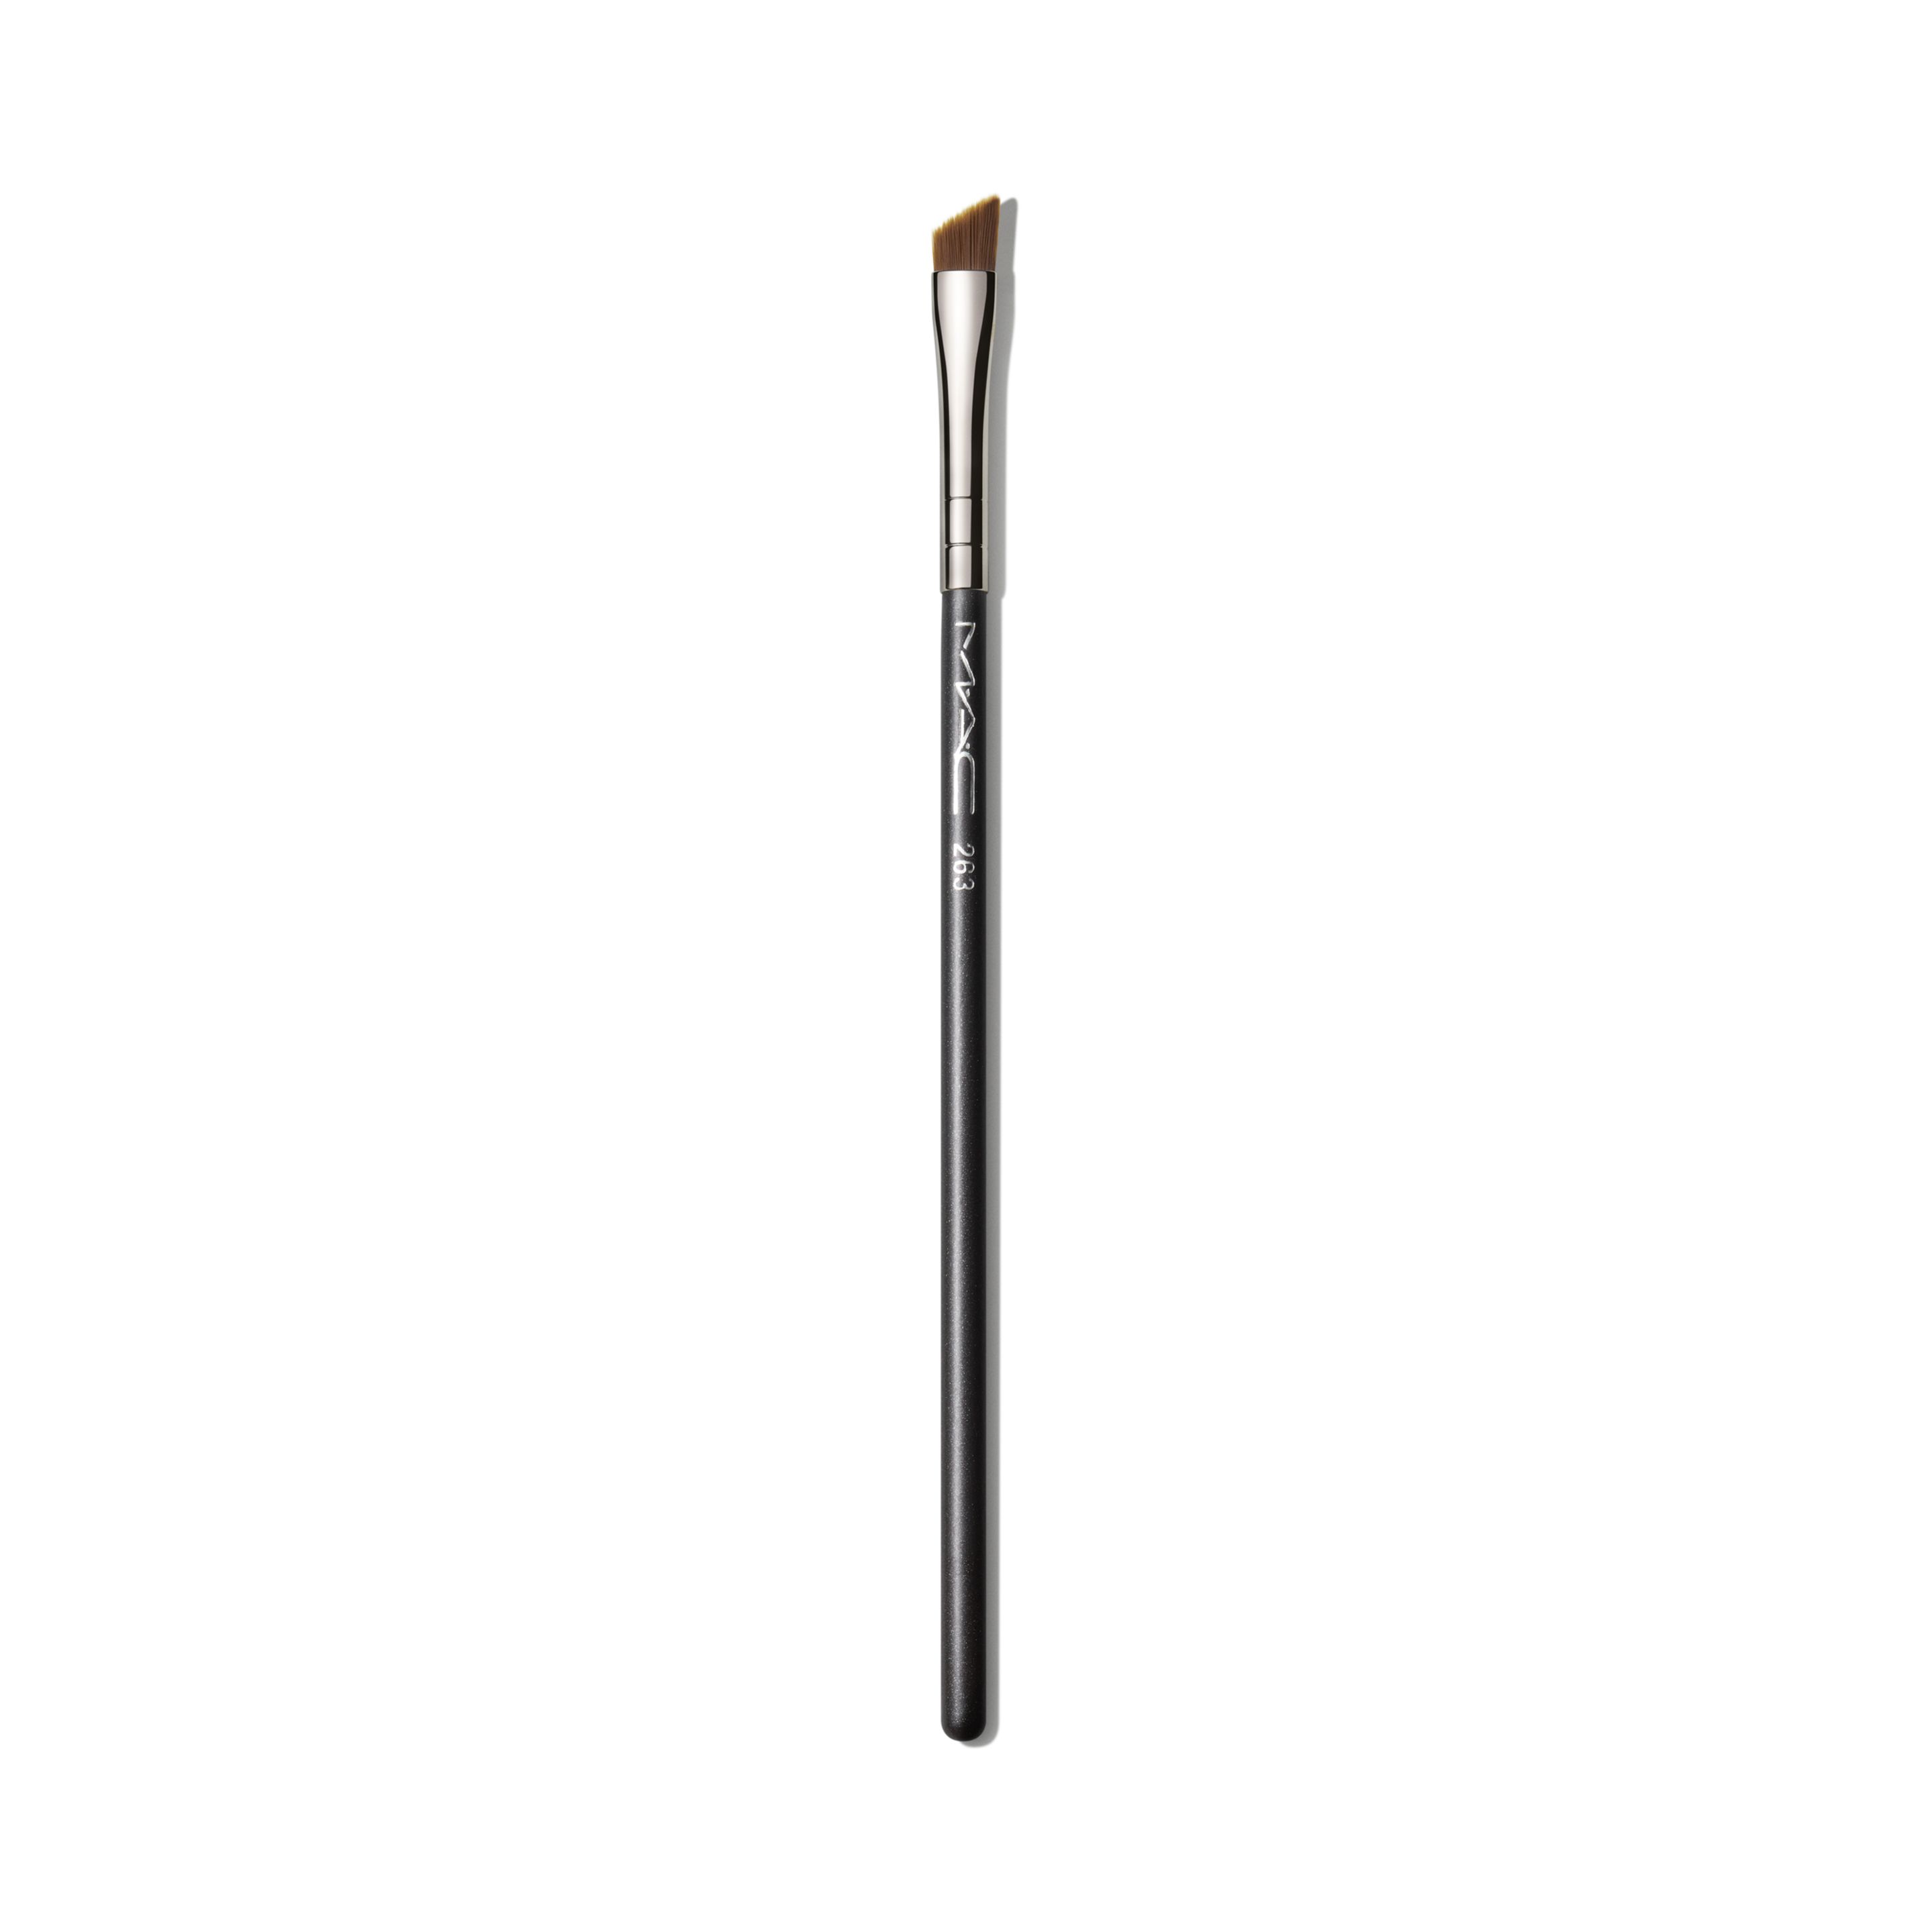 Кисть для глаз и бровей MAC Cosmetics Small Angle Brush №263 скошенная, черная кисть скошенная для открытых техник 220 46 мм черная